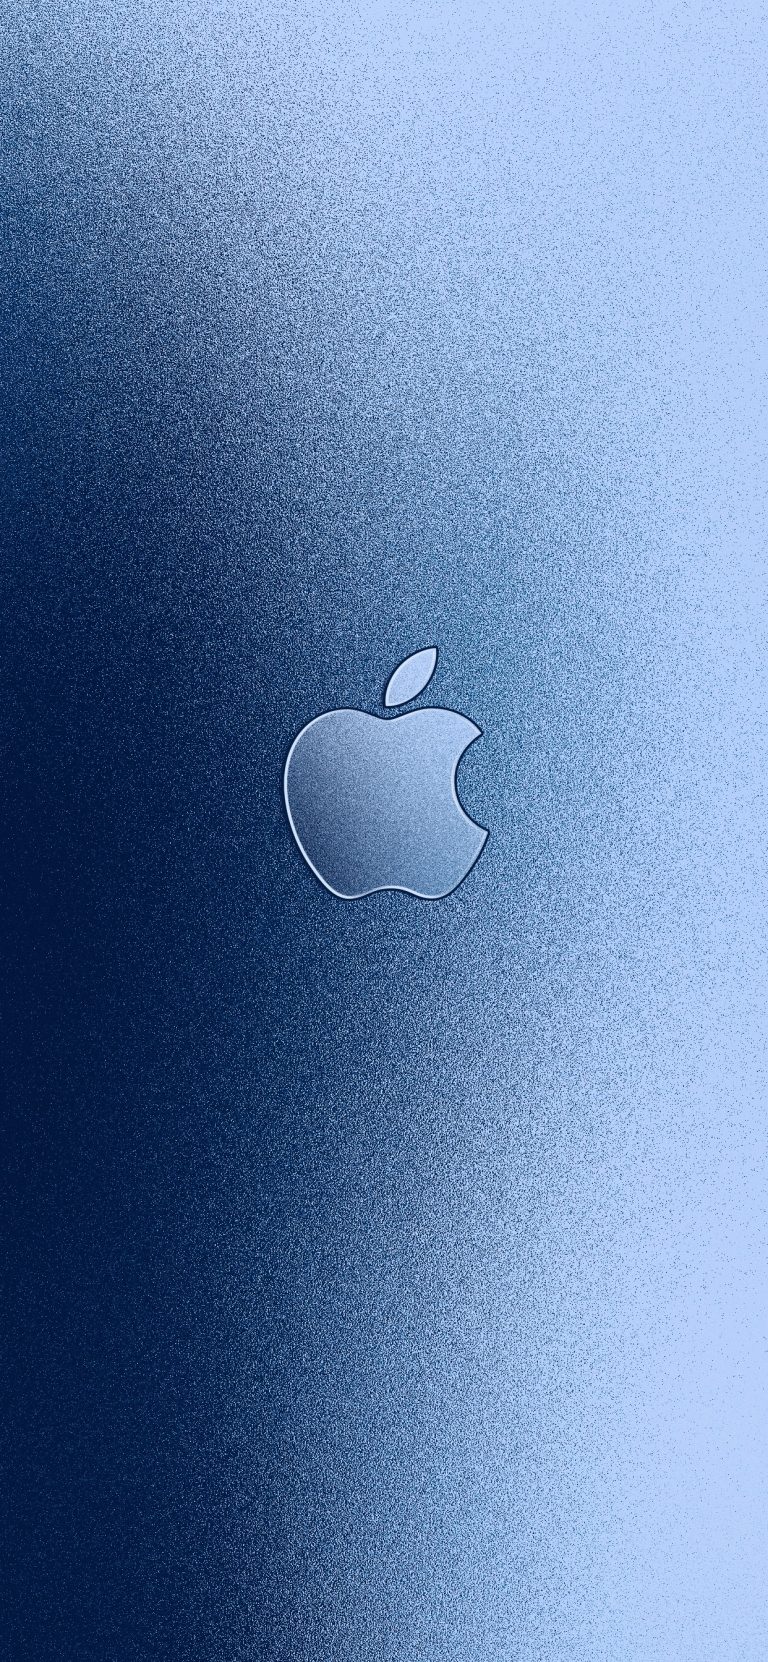 Ảnh nền đẹp chất lượng cao: logo Apple màu nhôm